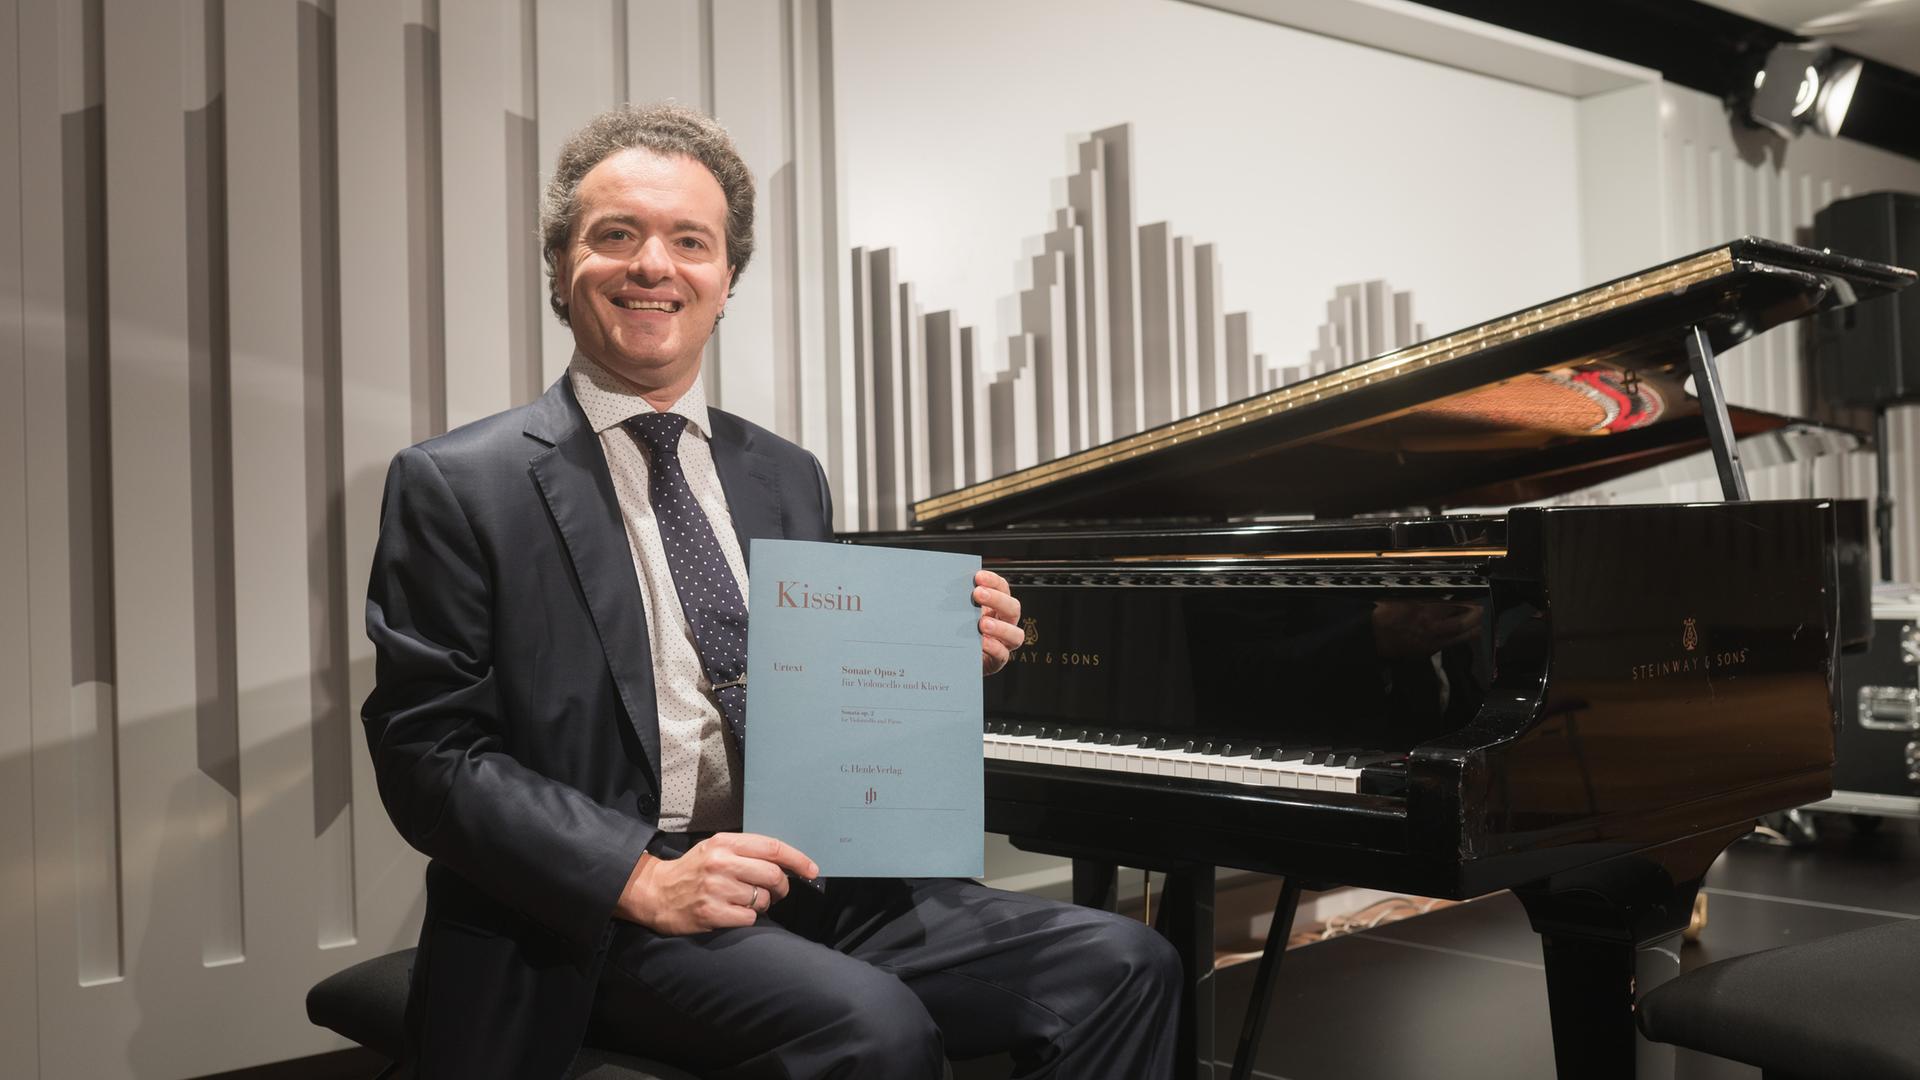 Пианист Евгений Кисин удостоен звания почётного доктора Веймарской Высшей школы музыки имени Ференца Листа